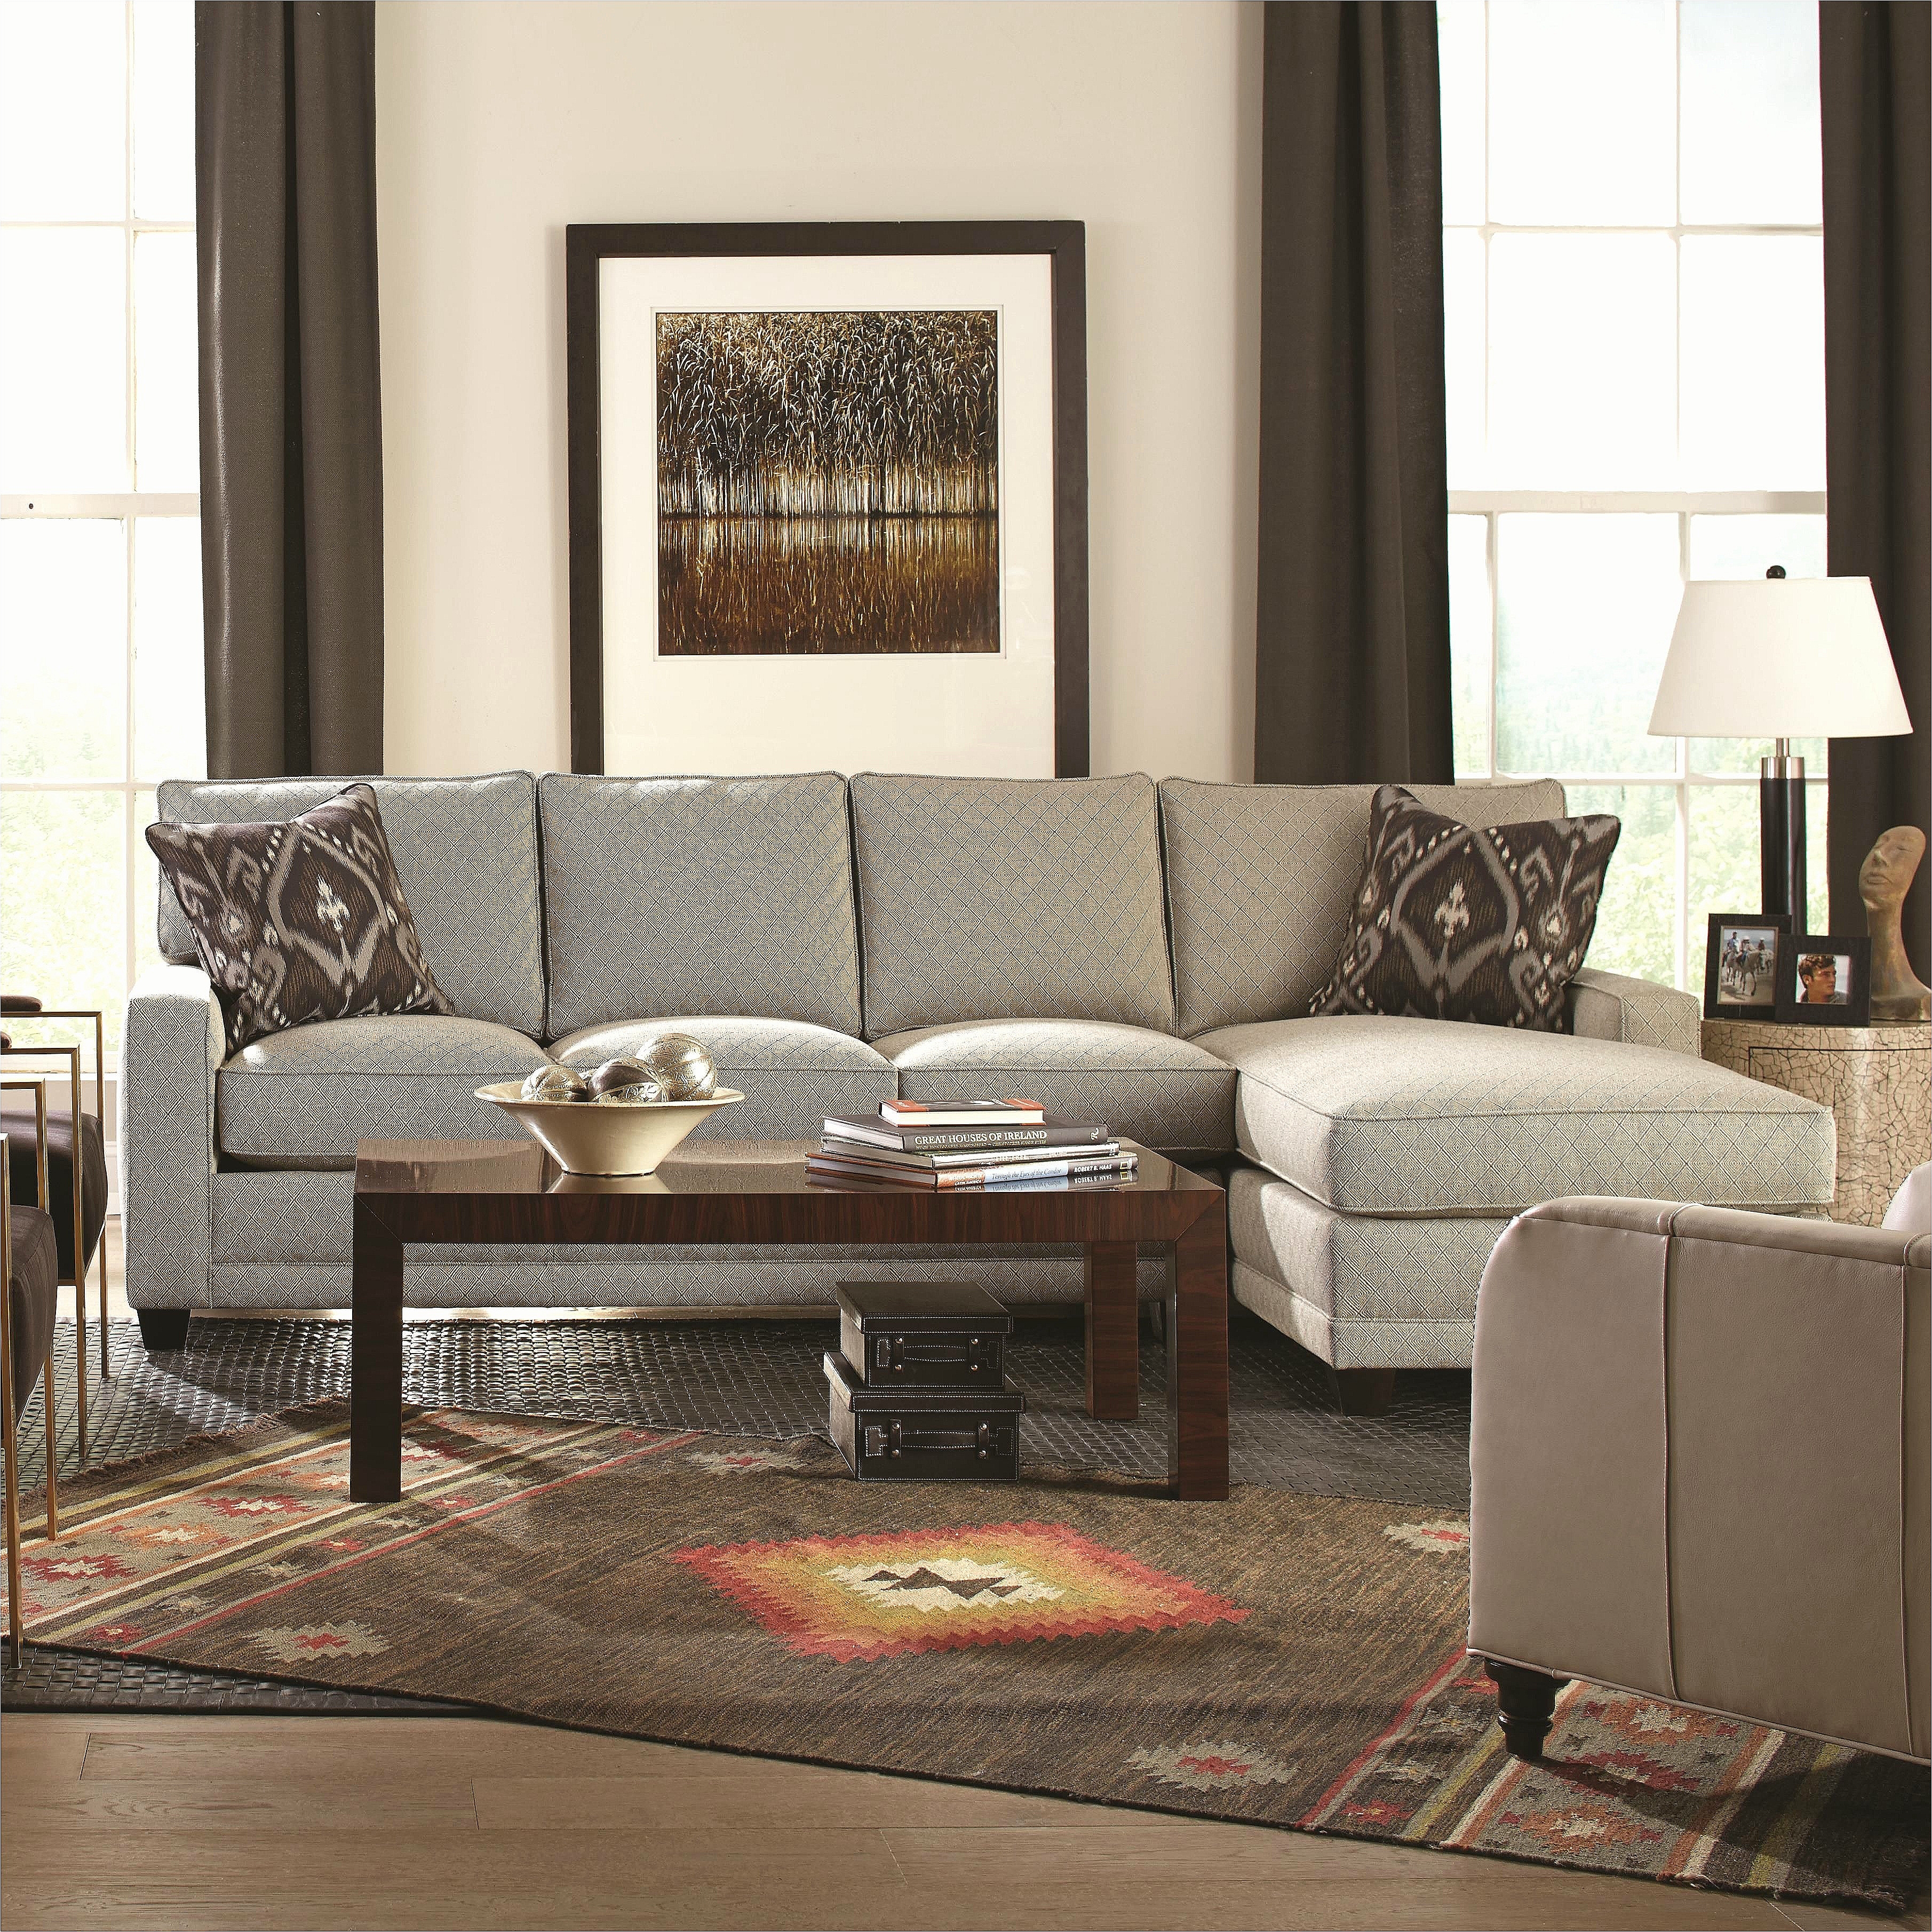 Livingroom sofas Ideas Home Interior Ideas for Living Room